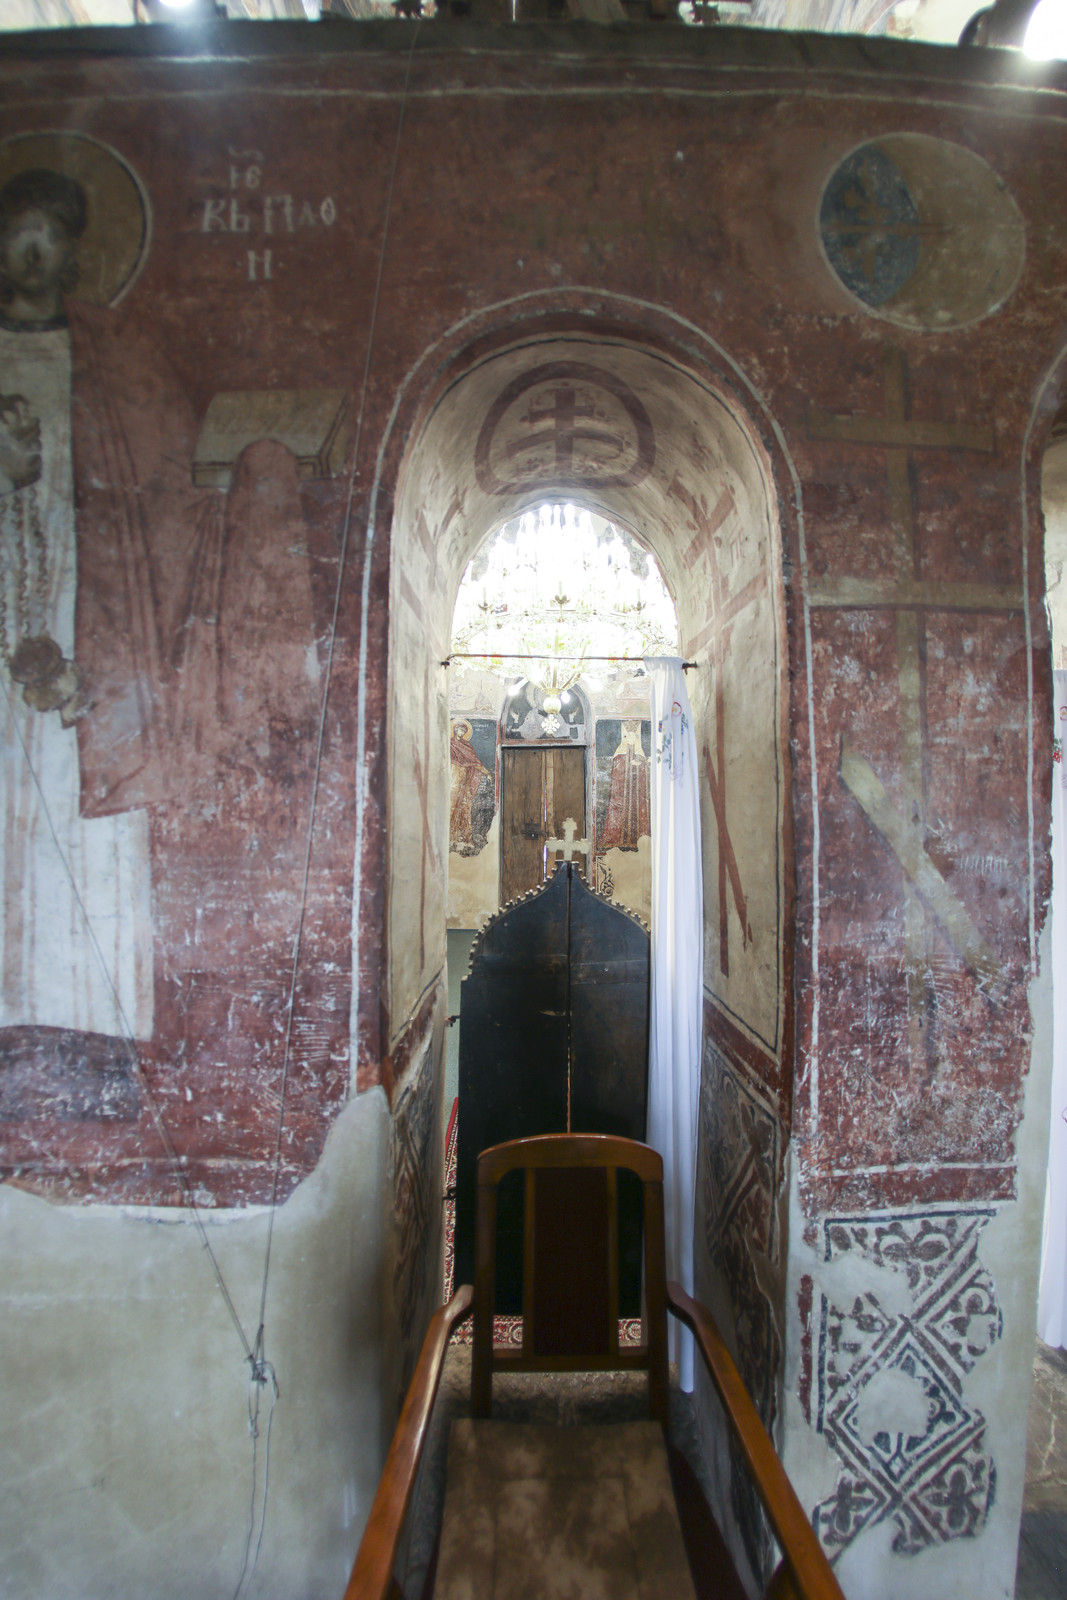 Зидана олтарска преграда и и наос, поглед из олтара